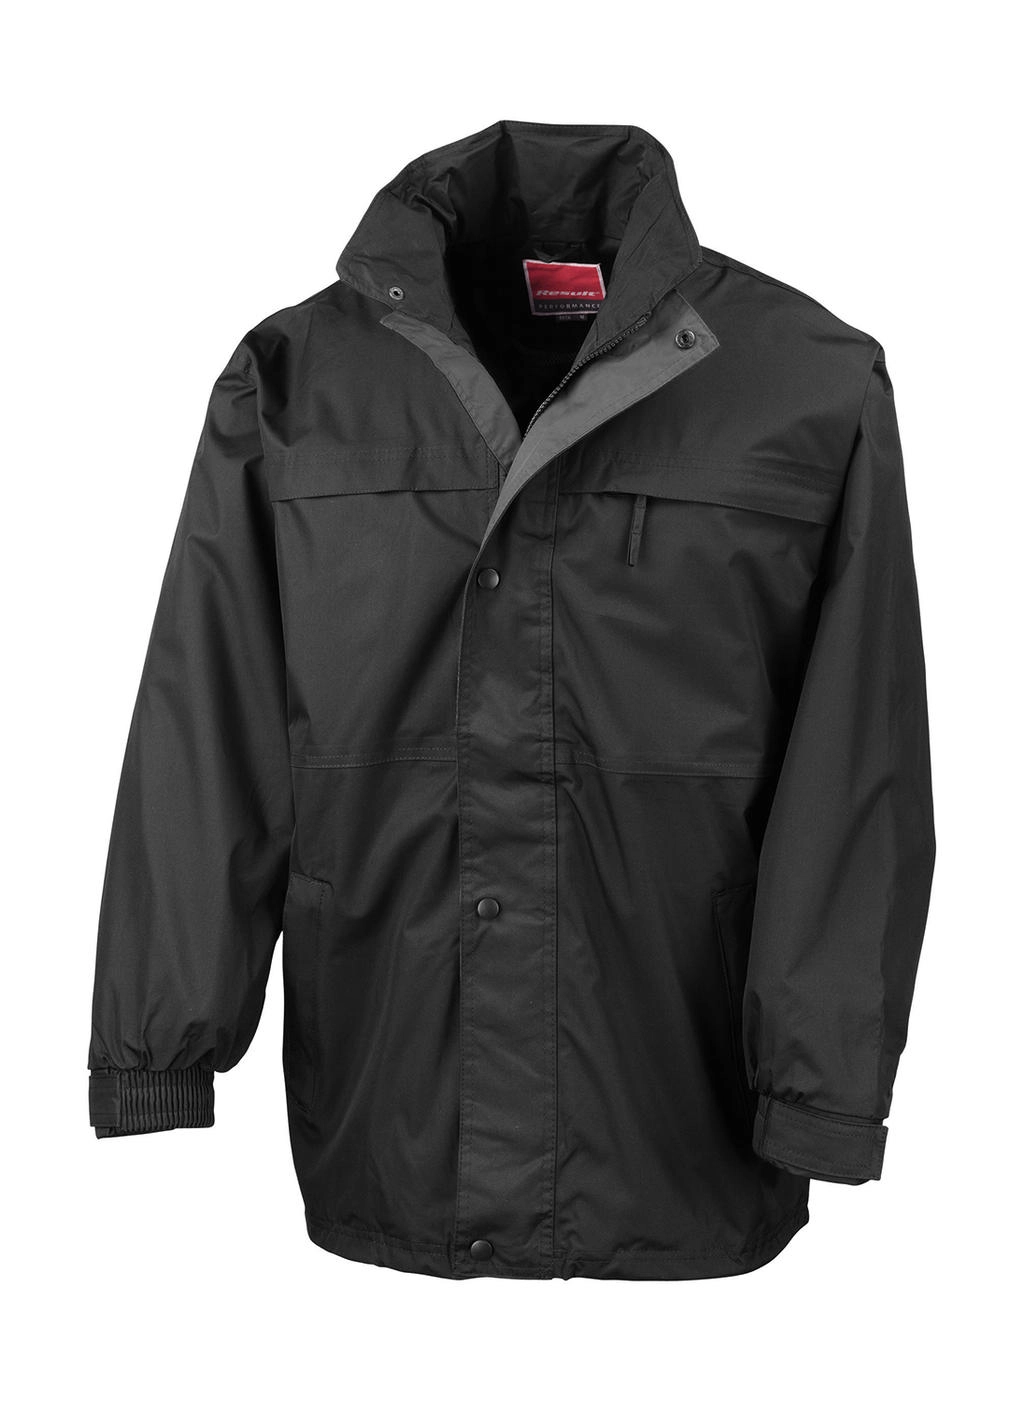 Mid-Season Jacket zum Besticken und Bedrucken in der Farbe Black/Grey mit Ihren Logo, Schriftzug oder Motiv.